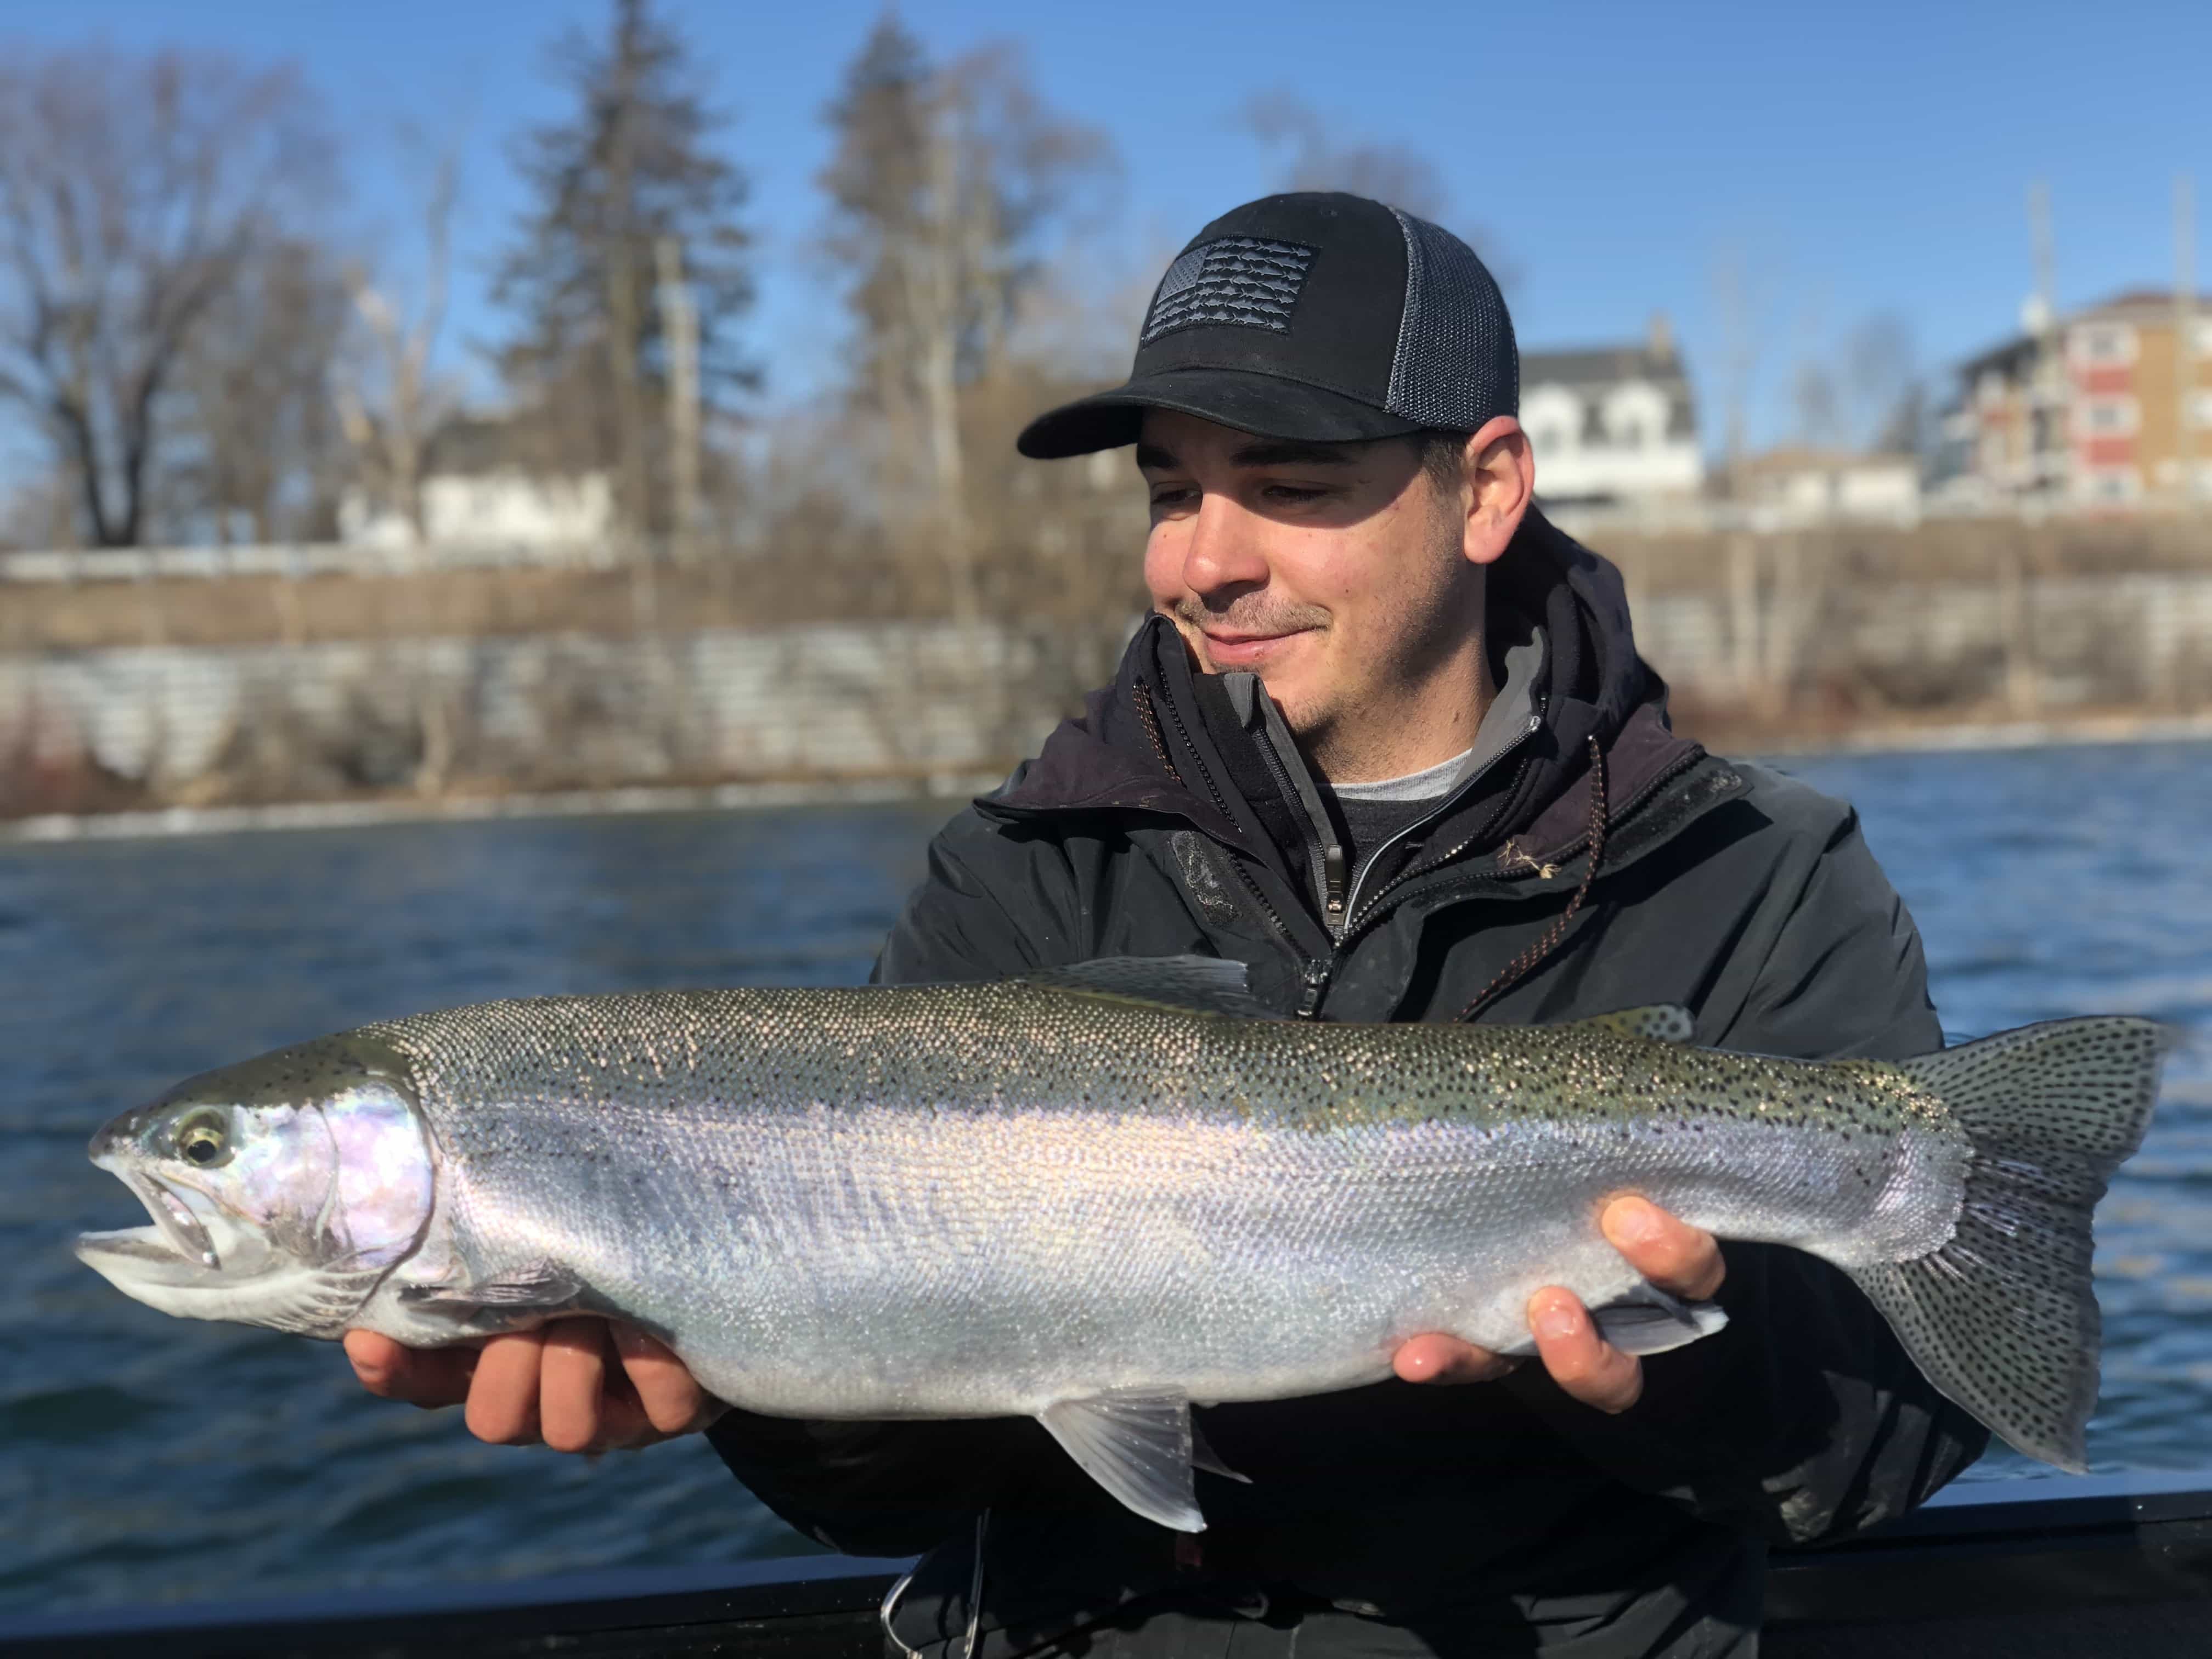 20180326 132504066 iOS - Winter Charter Fishing in Buffalo Niagara